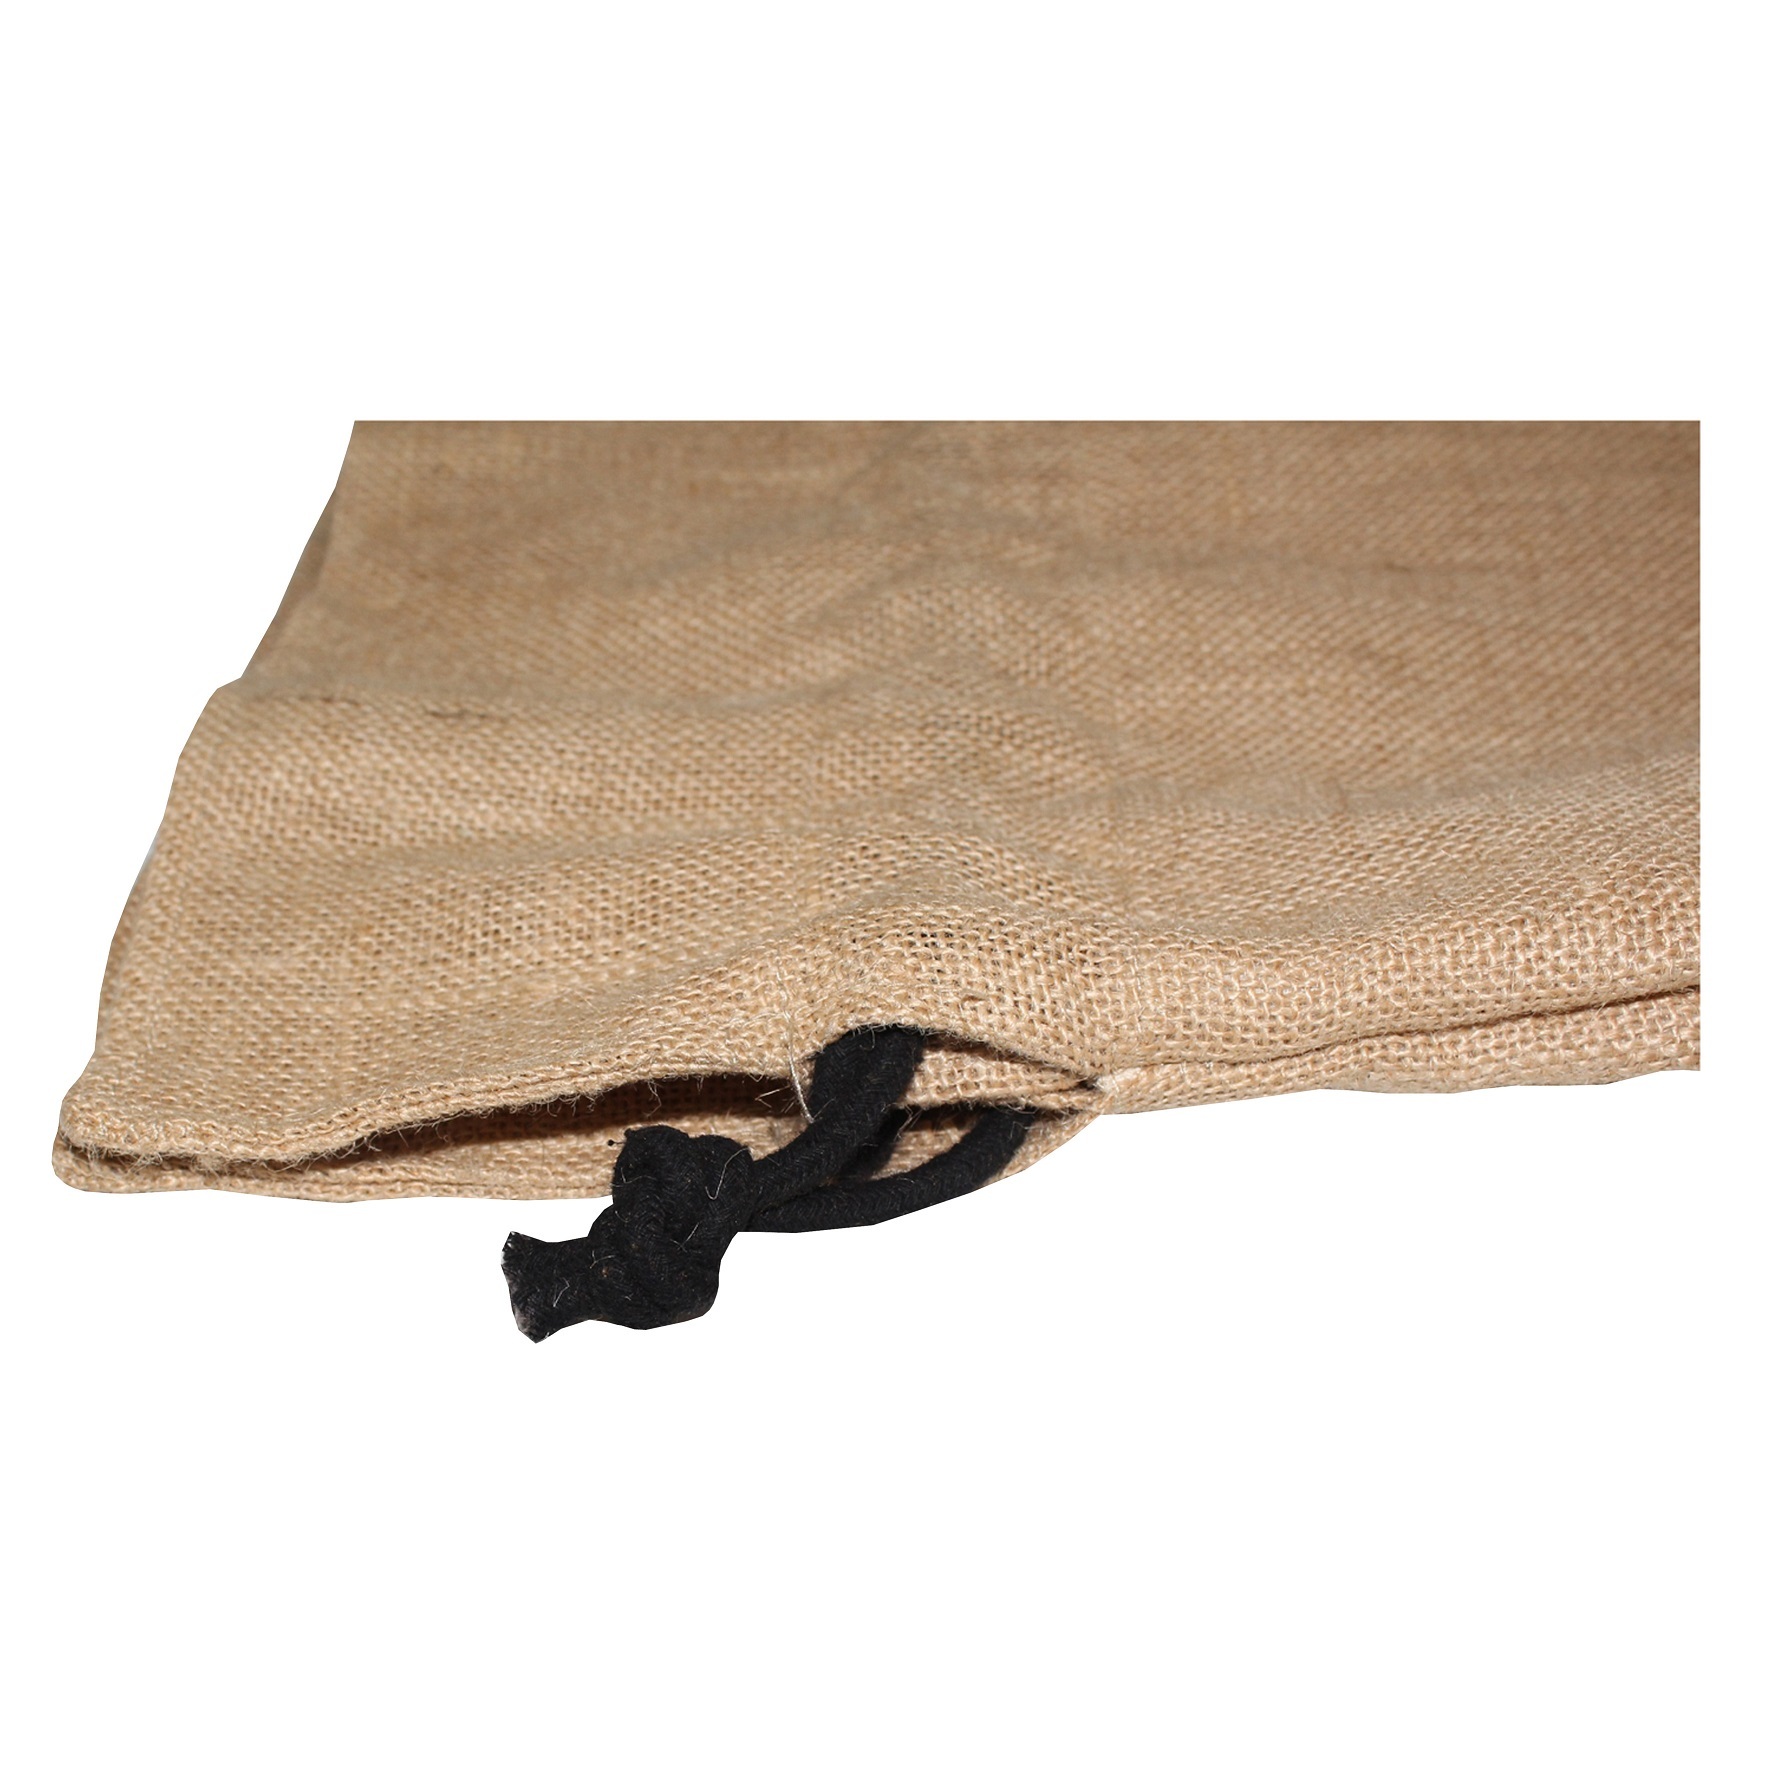 Natural Non Laminated Jute Fabric Cotton Lined Drawstring Bag